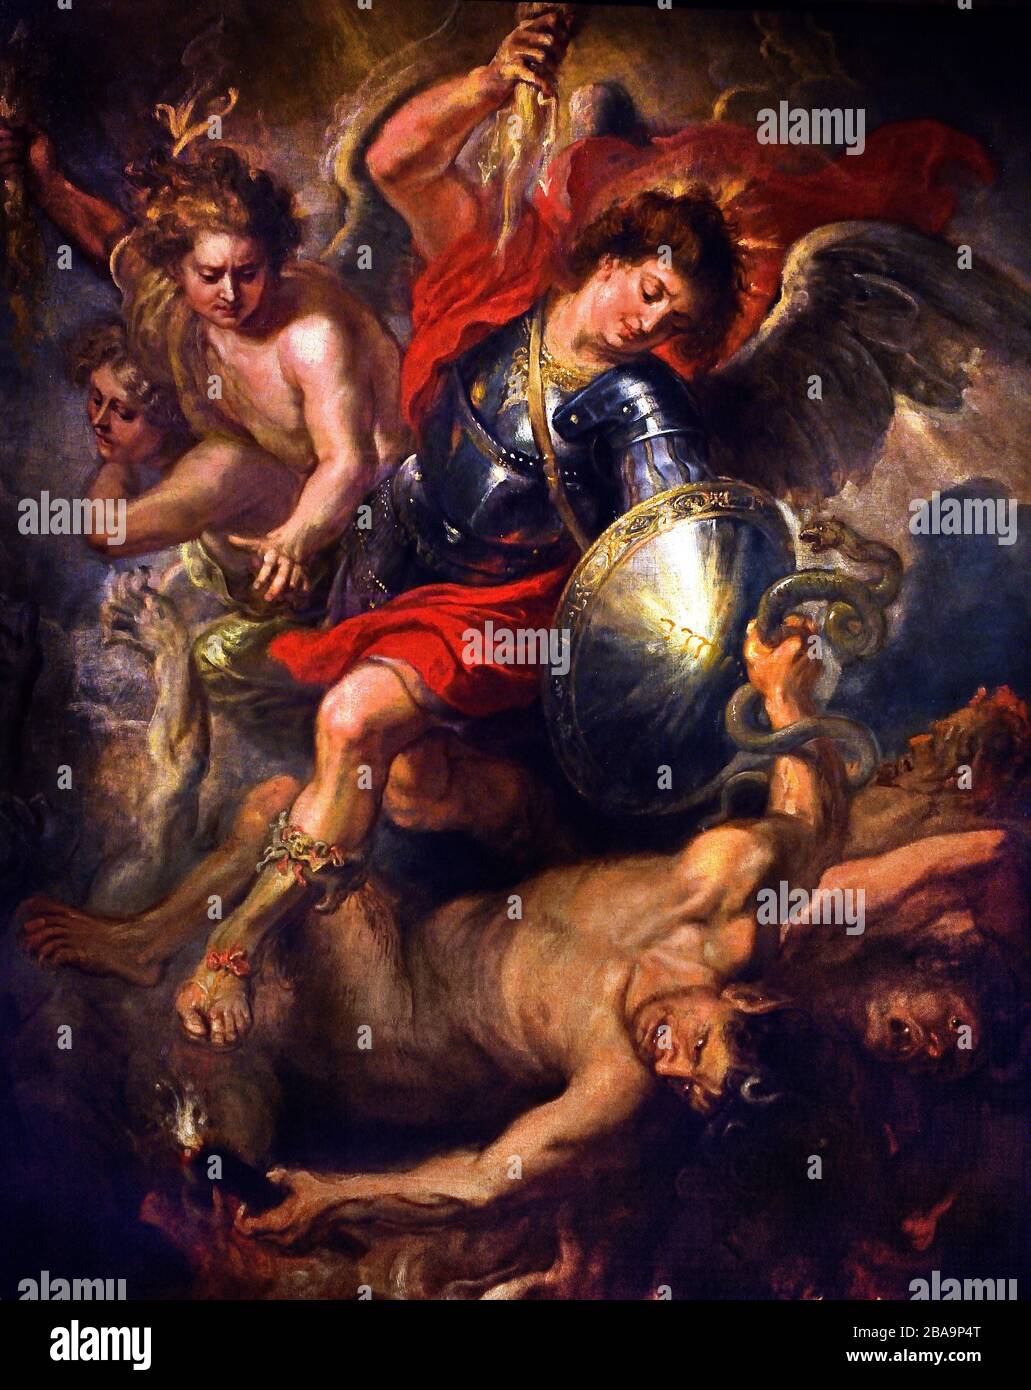 St Michael expulsar a Lucifer y los ángeles rebeldes del cielo 1622 Peter Paul Rubens 1577-1640 belga de Flandes Bélgica Foto de stock